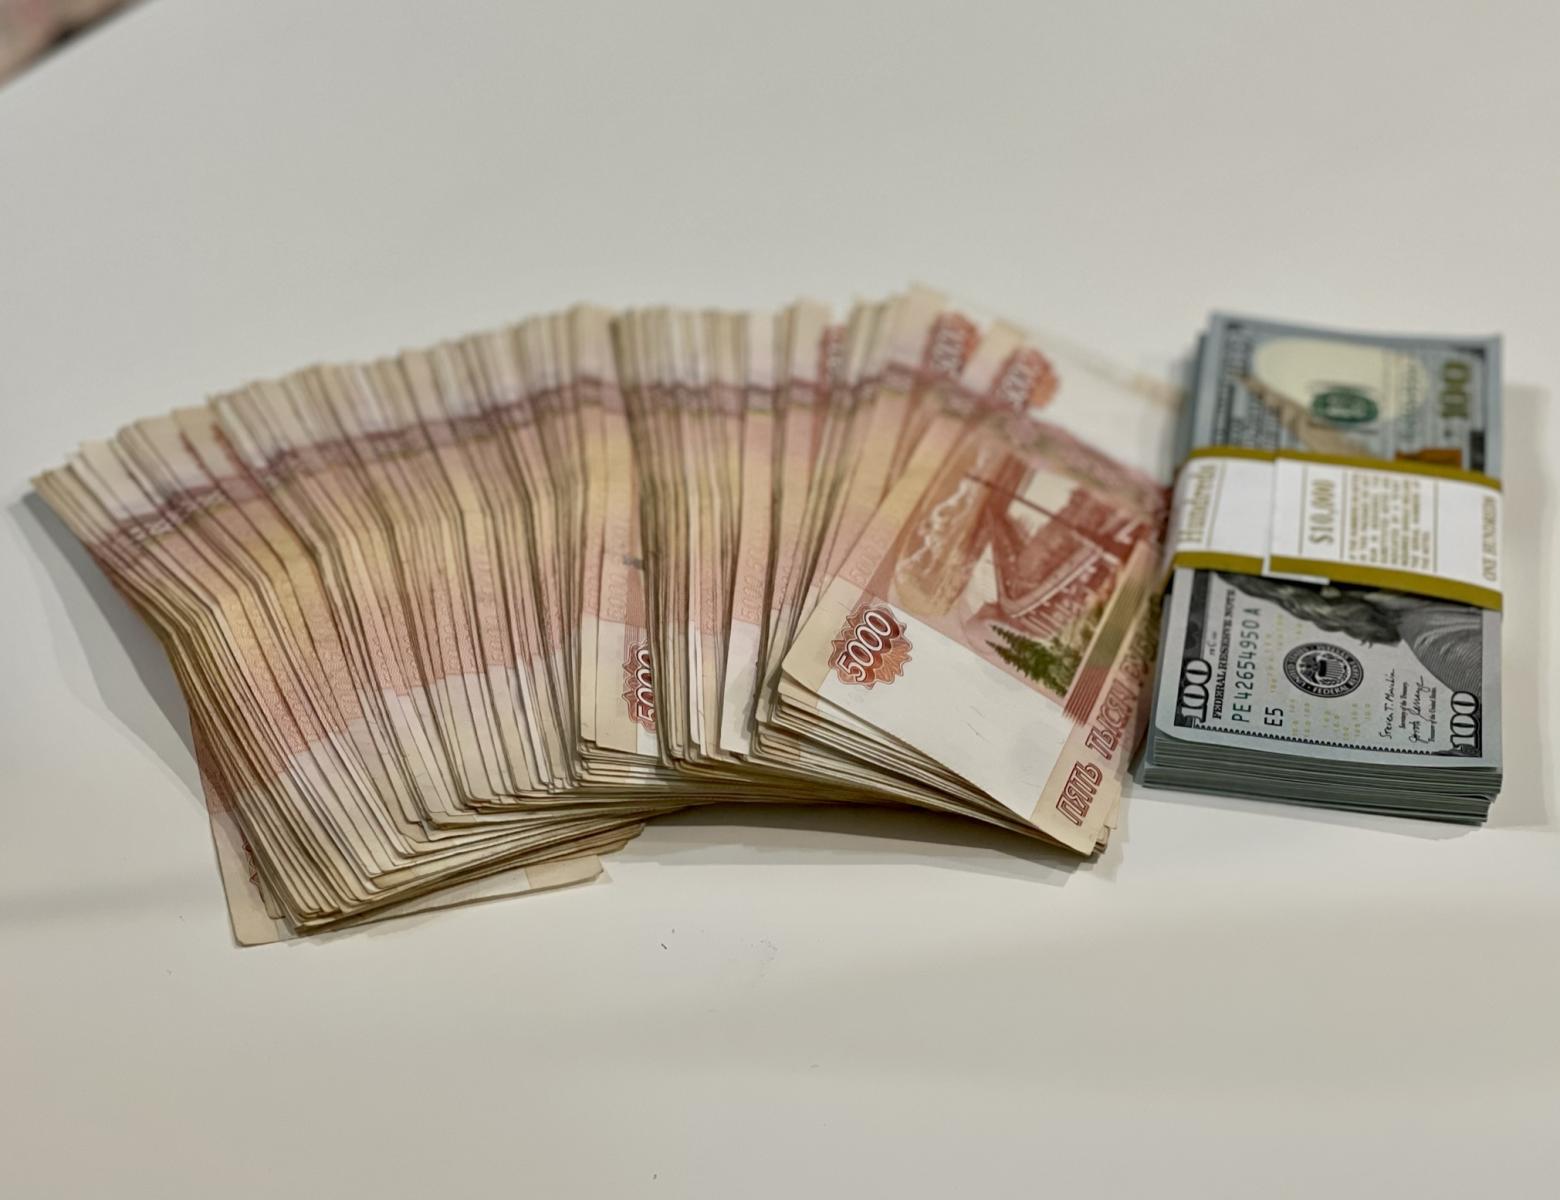 За неделю 41 доверчивый житель Брянской области перечислил мошенникам более 13 млн рублей